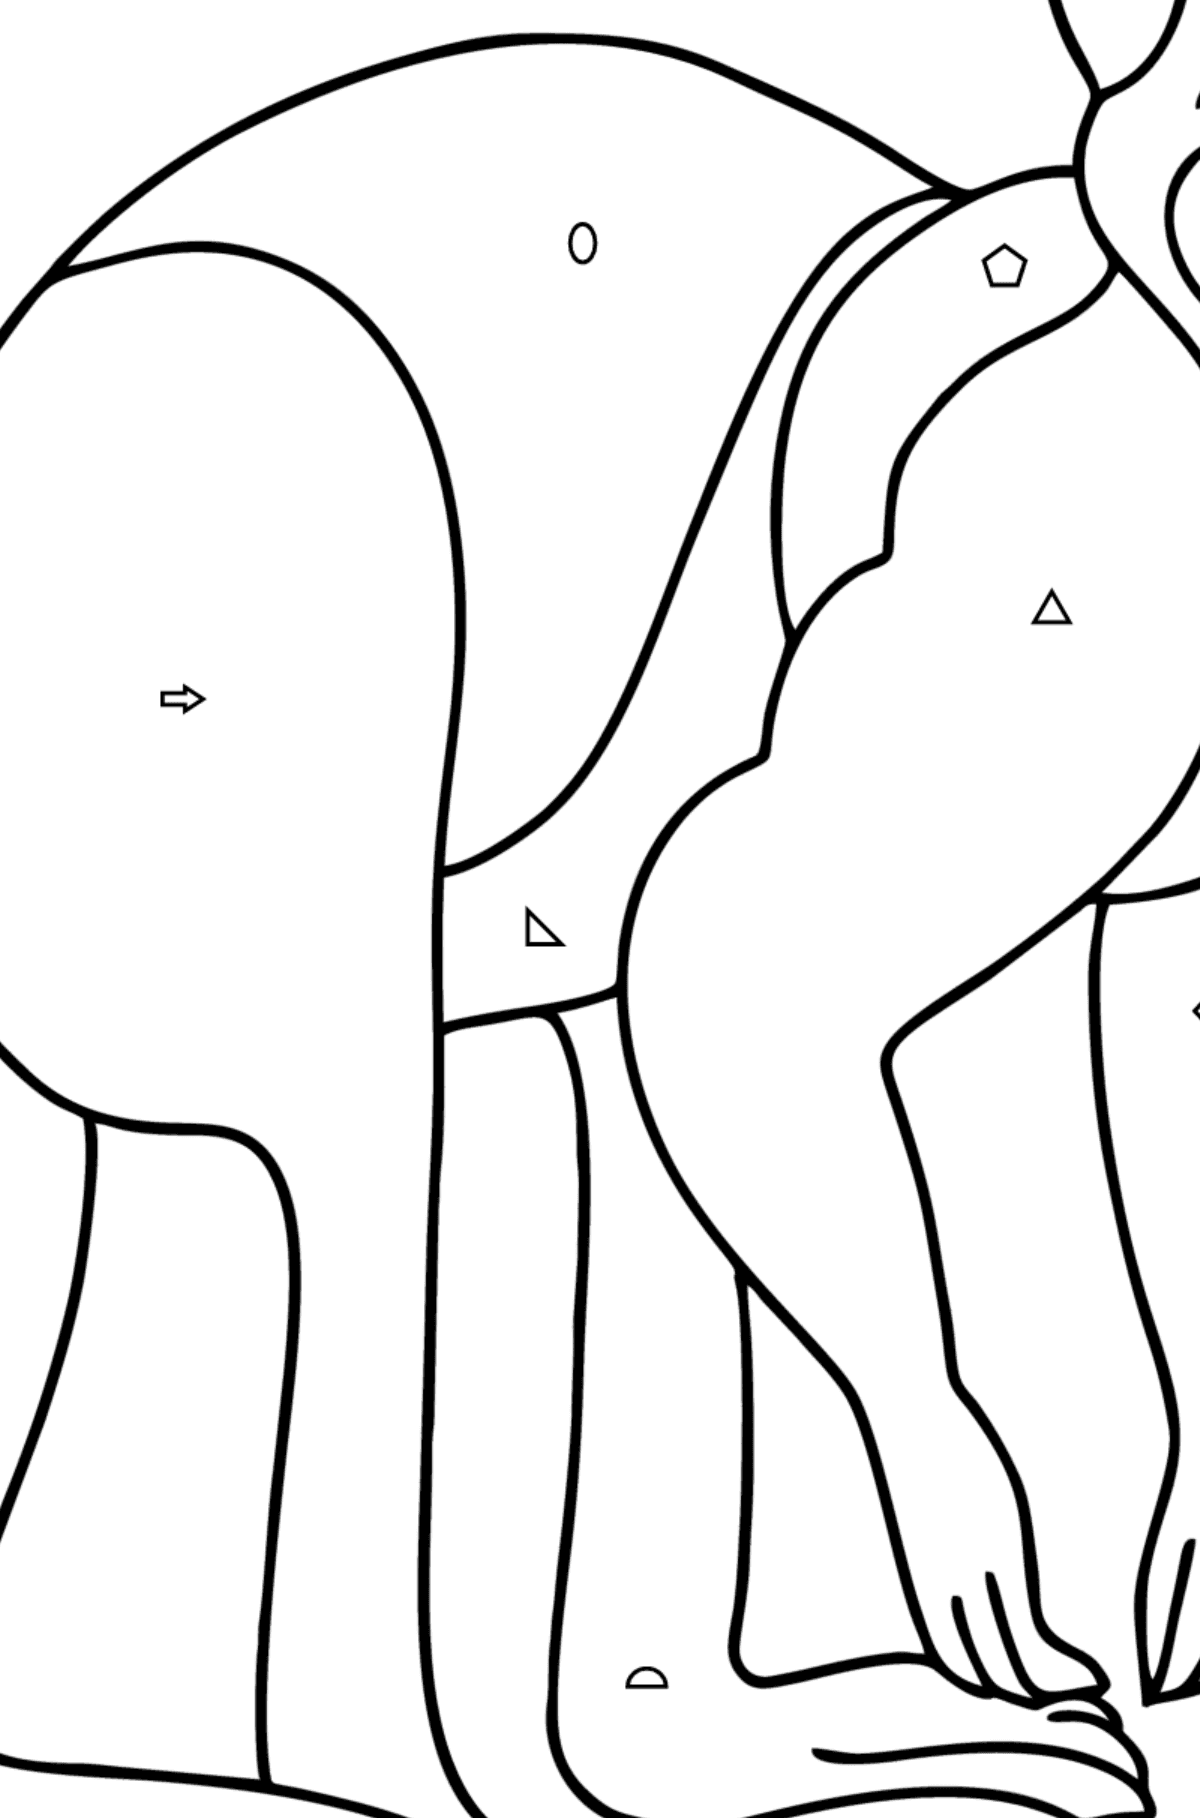 Omalovánka klokan zázvorový - Omalovánka podle Geometrických tvarů pro děti